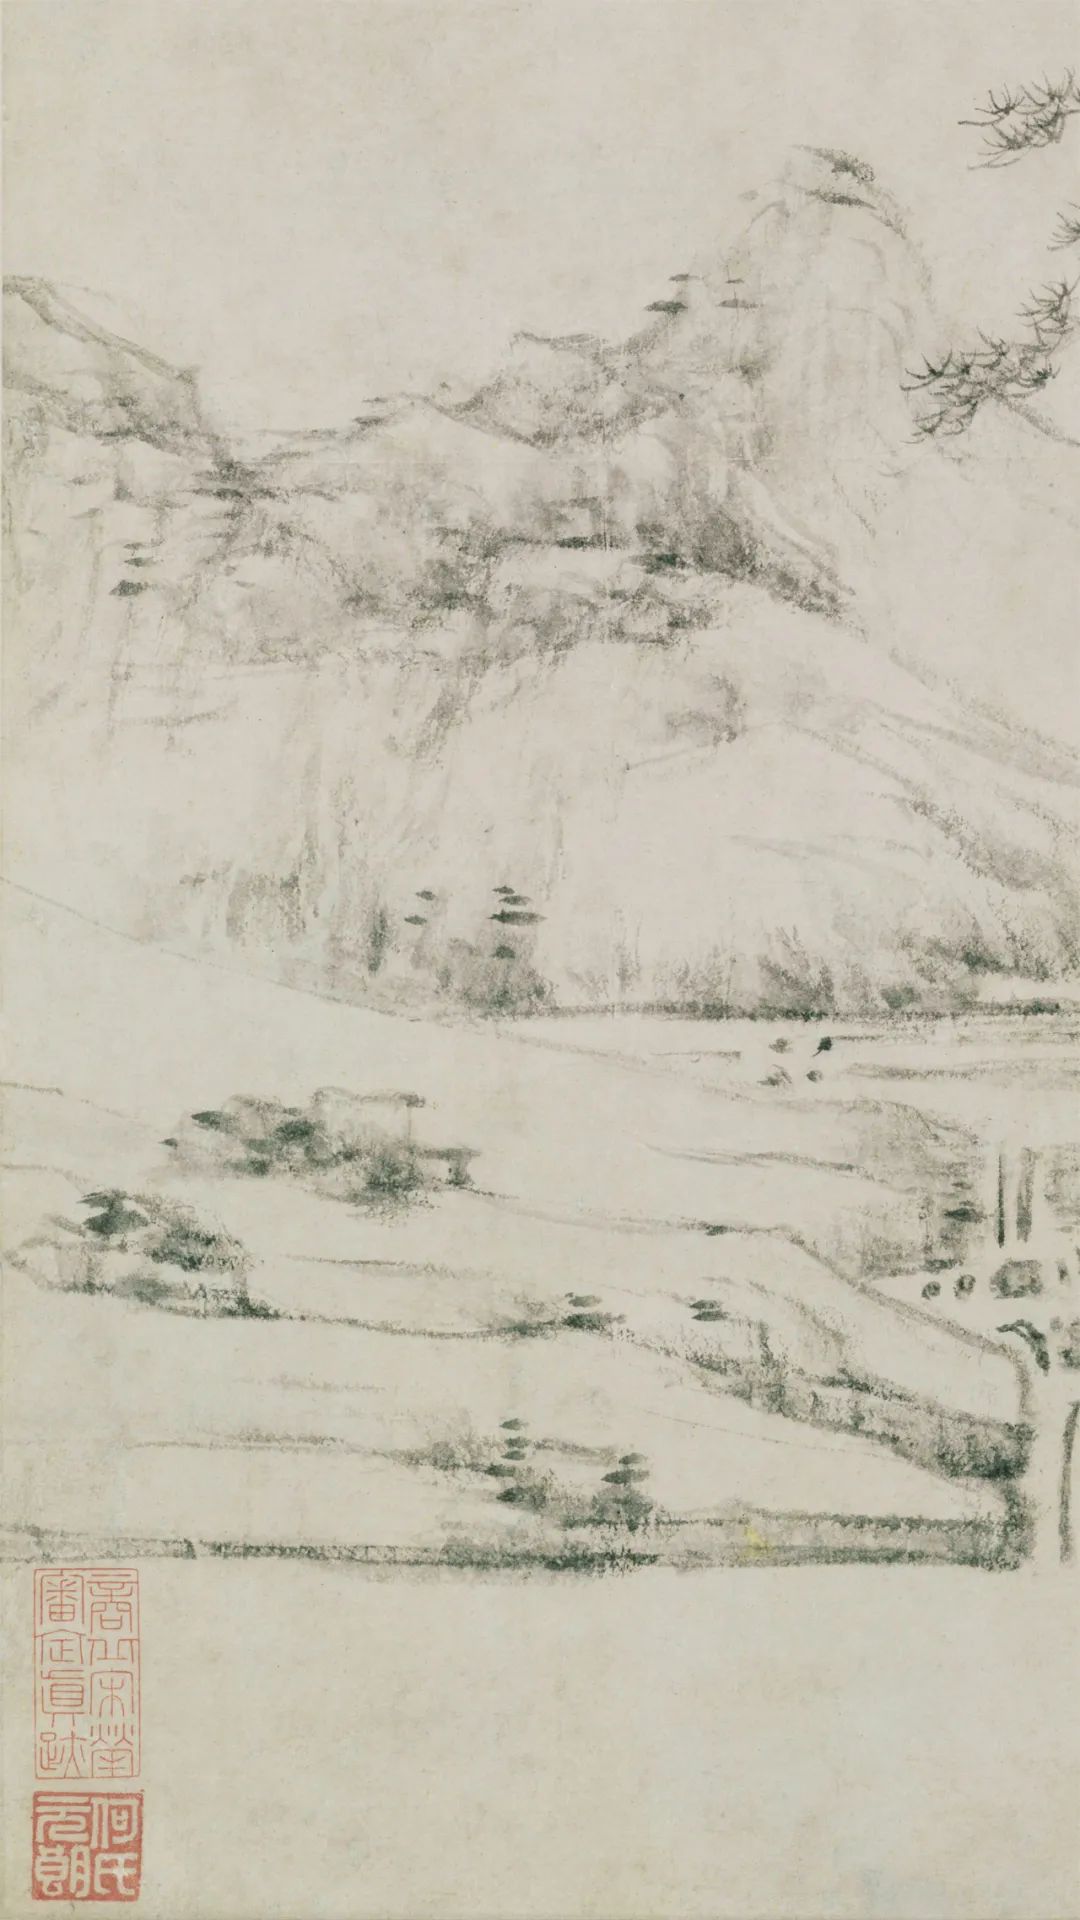 元代画家倪瓒的山水画《幽涧寒松图》欣赏